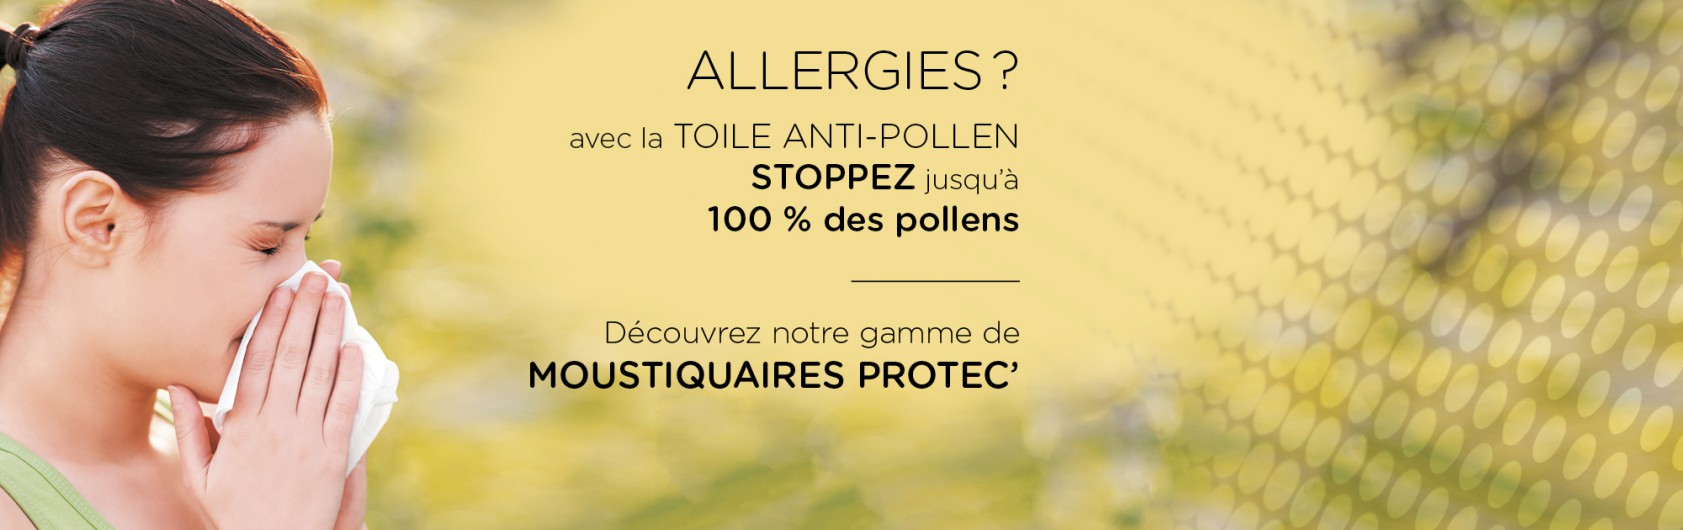 moustiquaires anti pollen